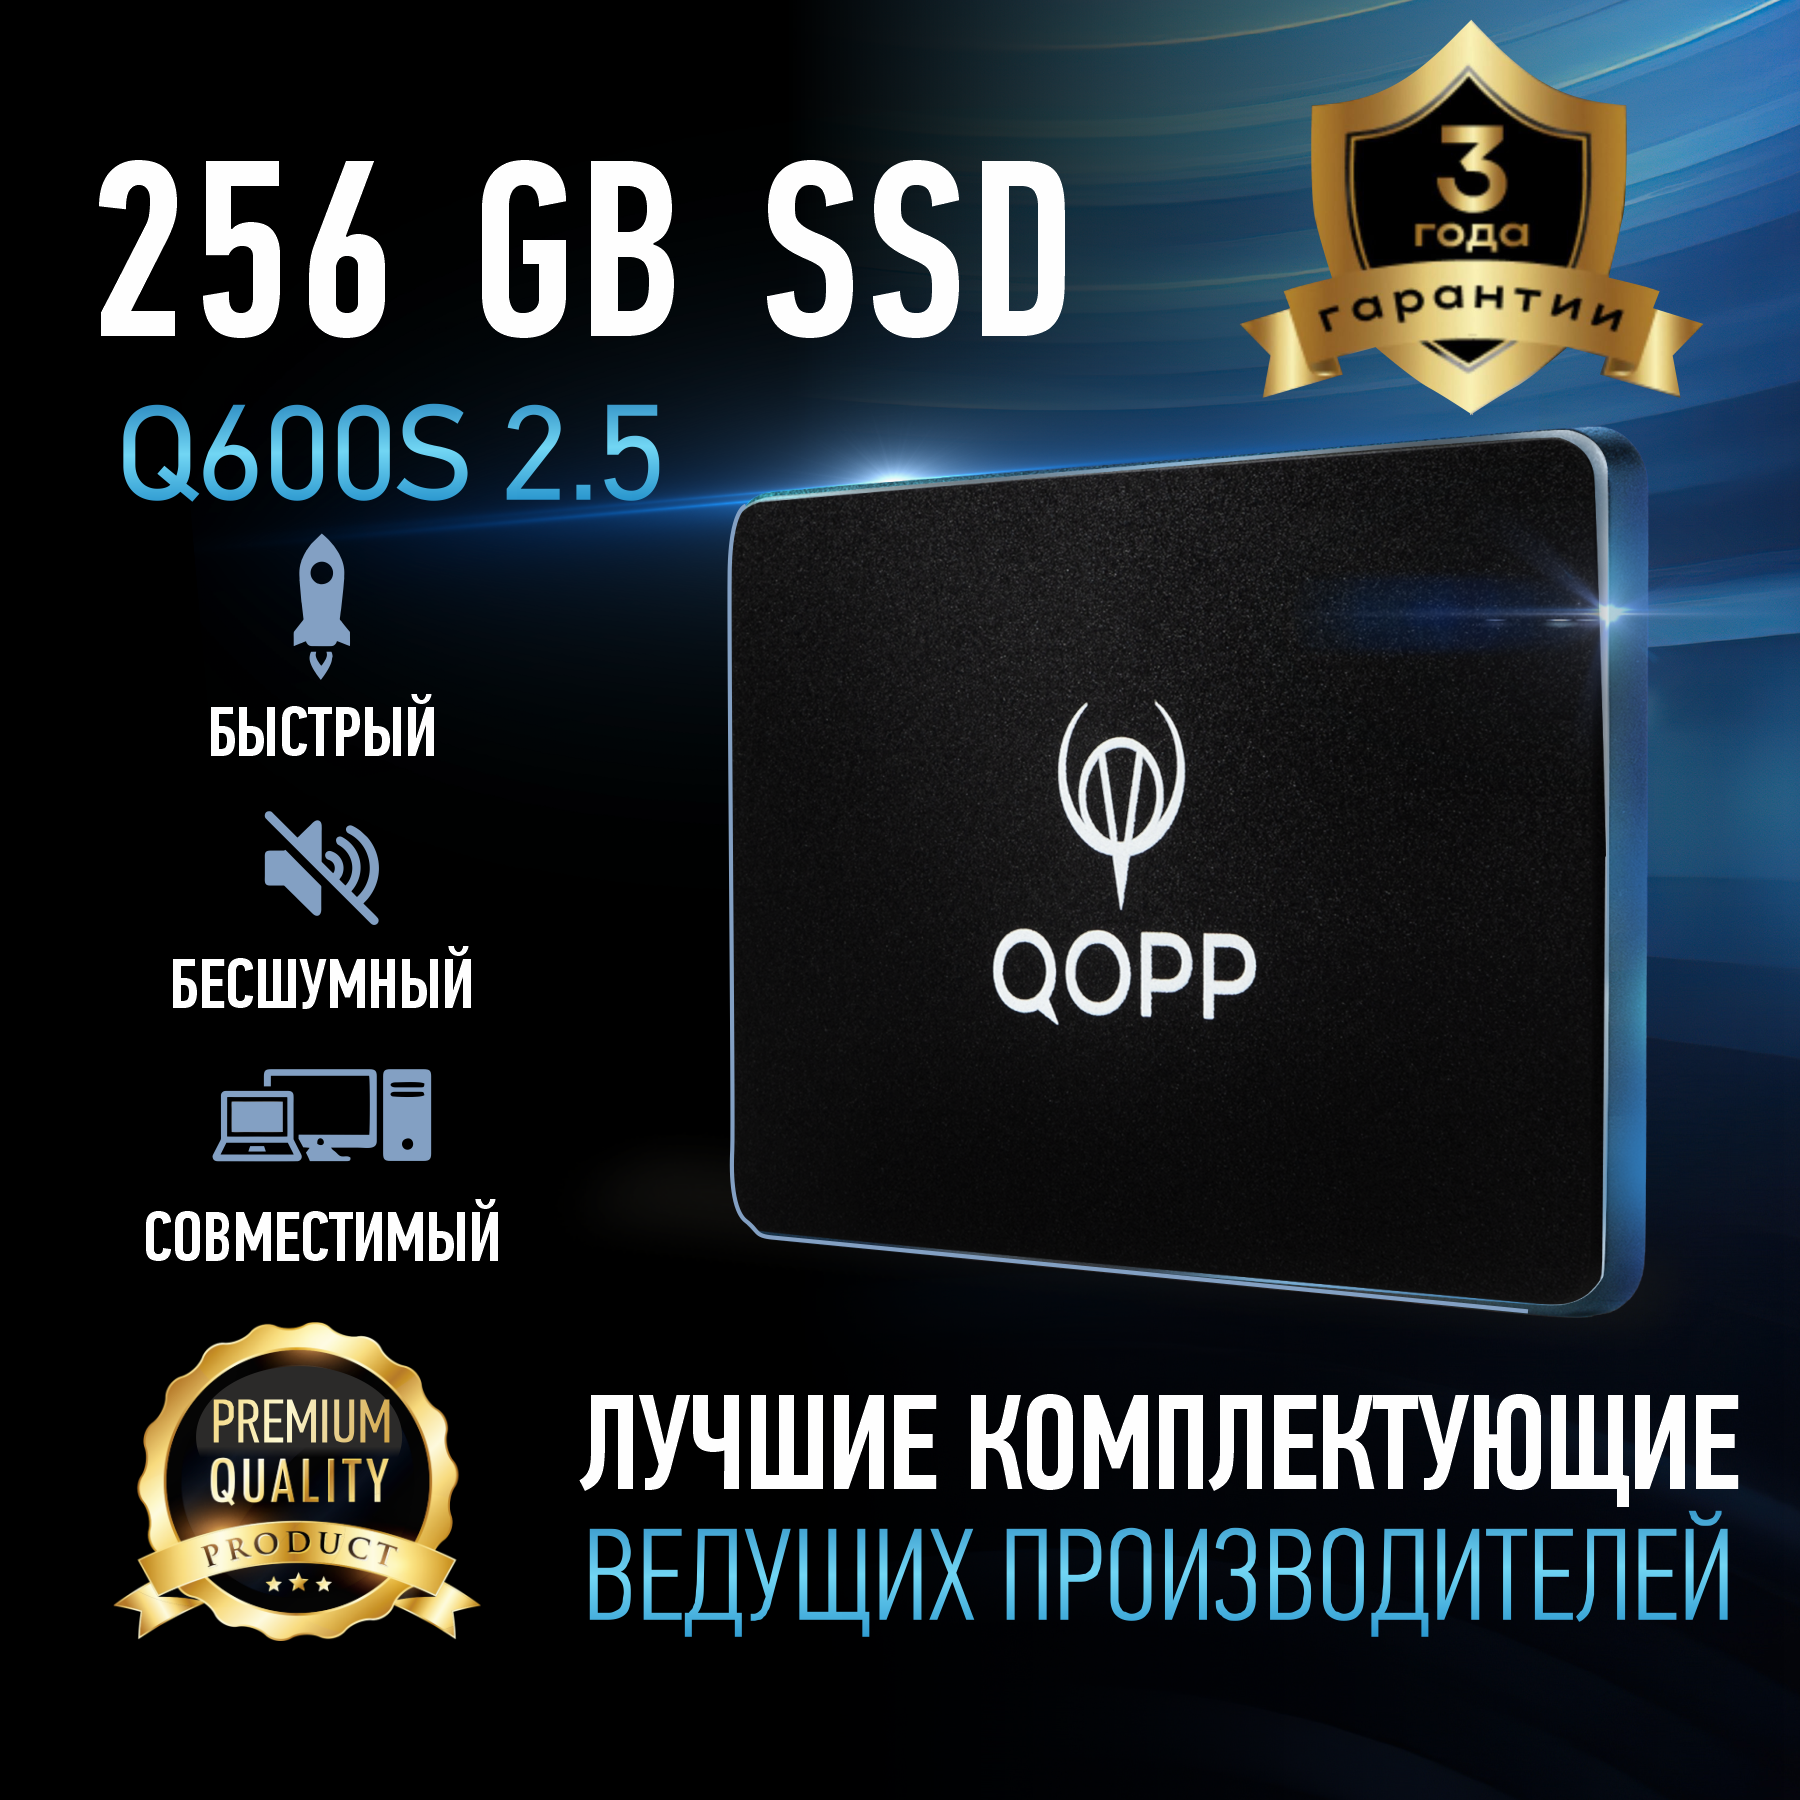 256 GB Внутренний SSD накопитель QOPP 2.5 SATA3 6.0 Гбит/с жесткий диск для ноутбука и компьютера